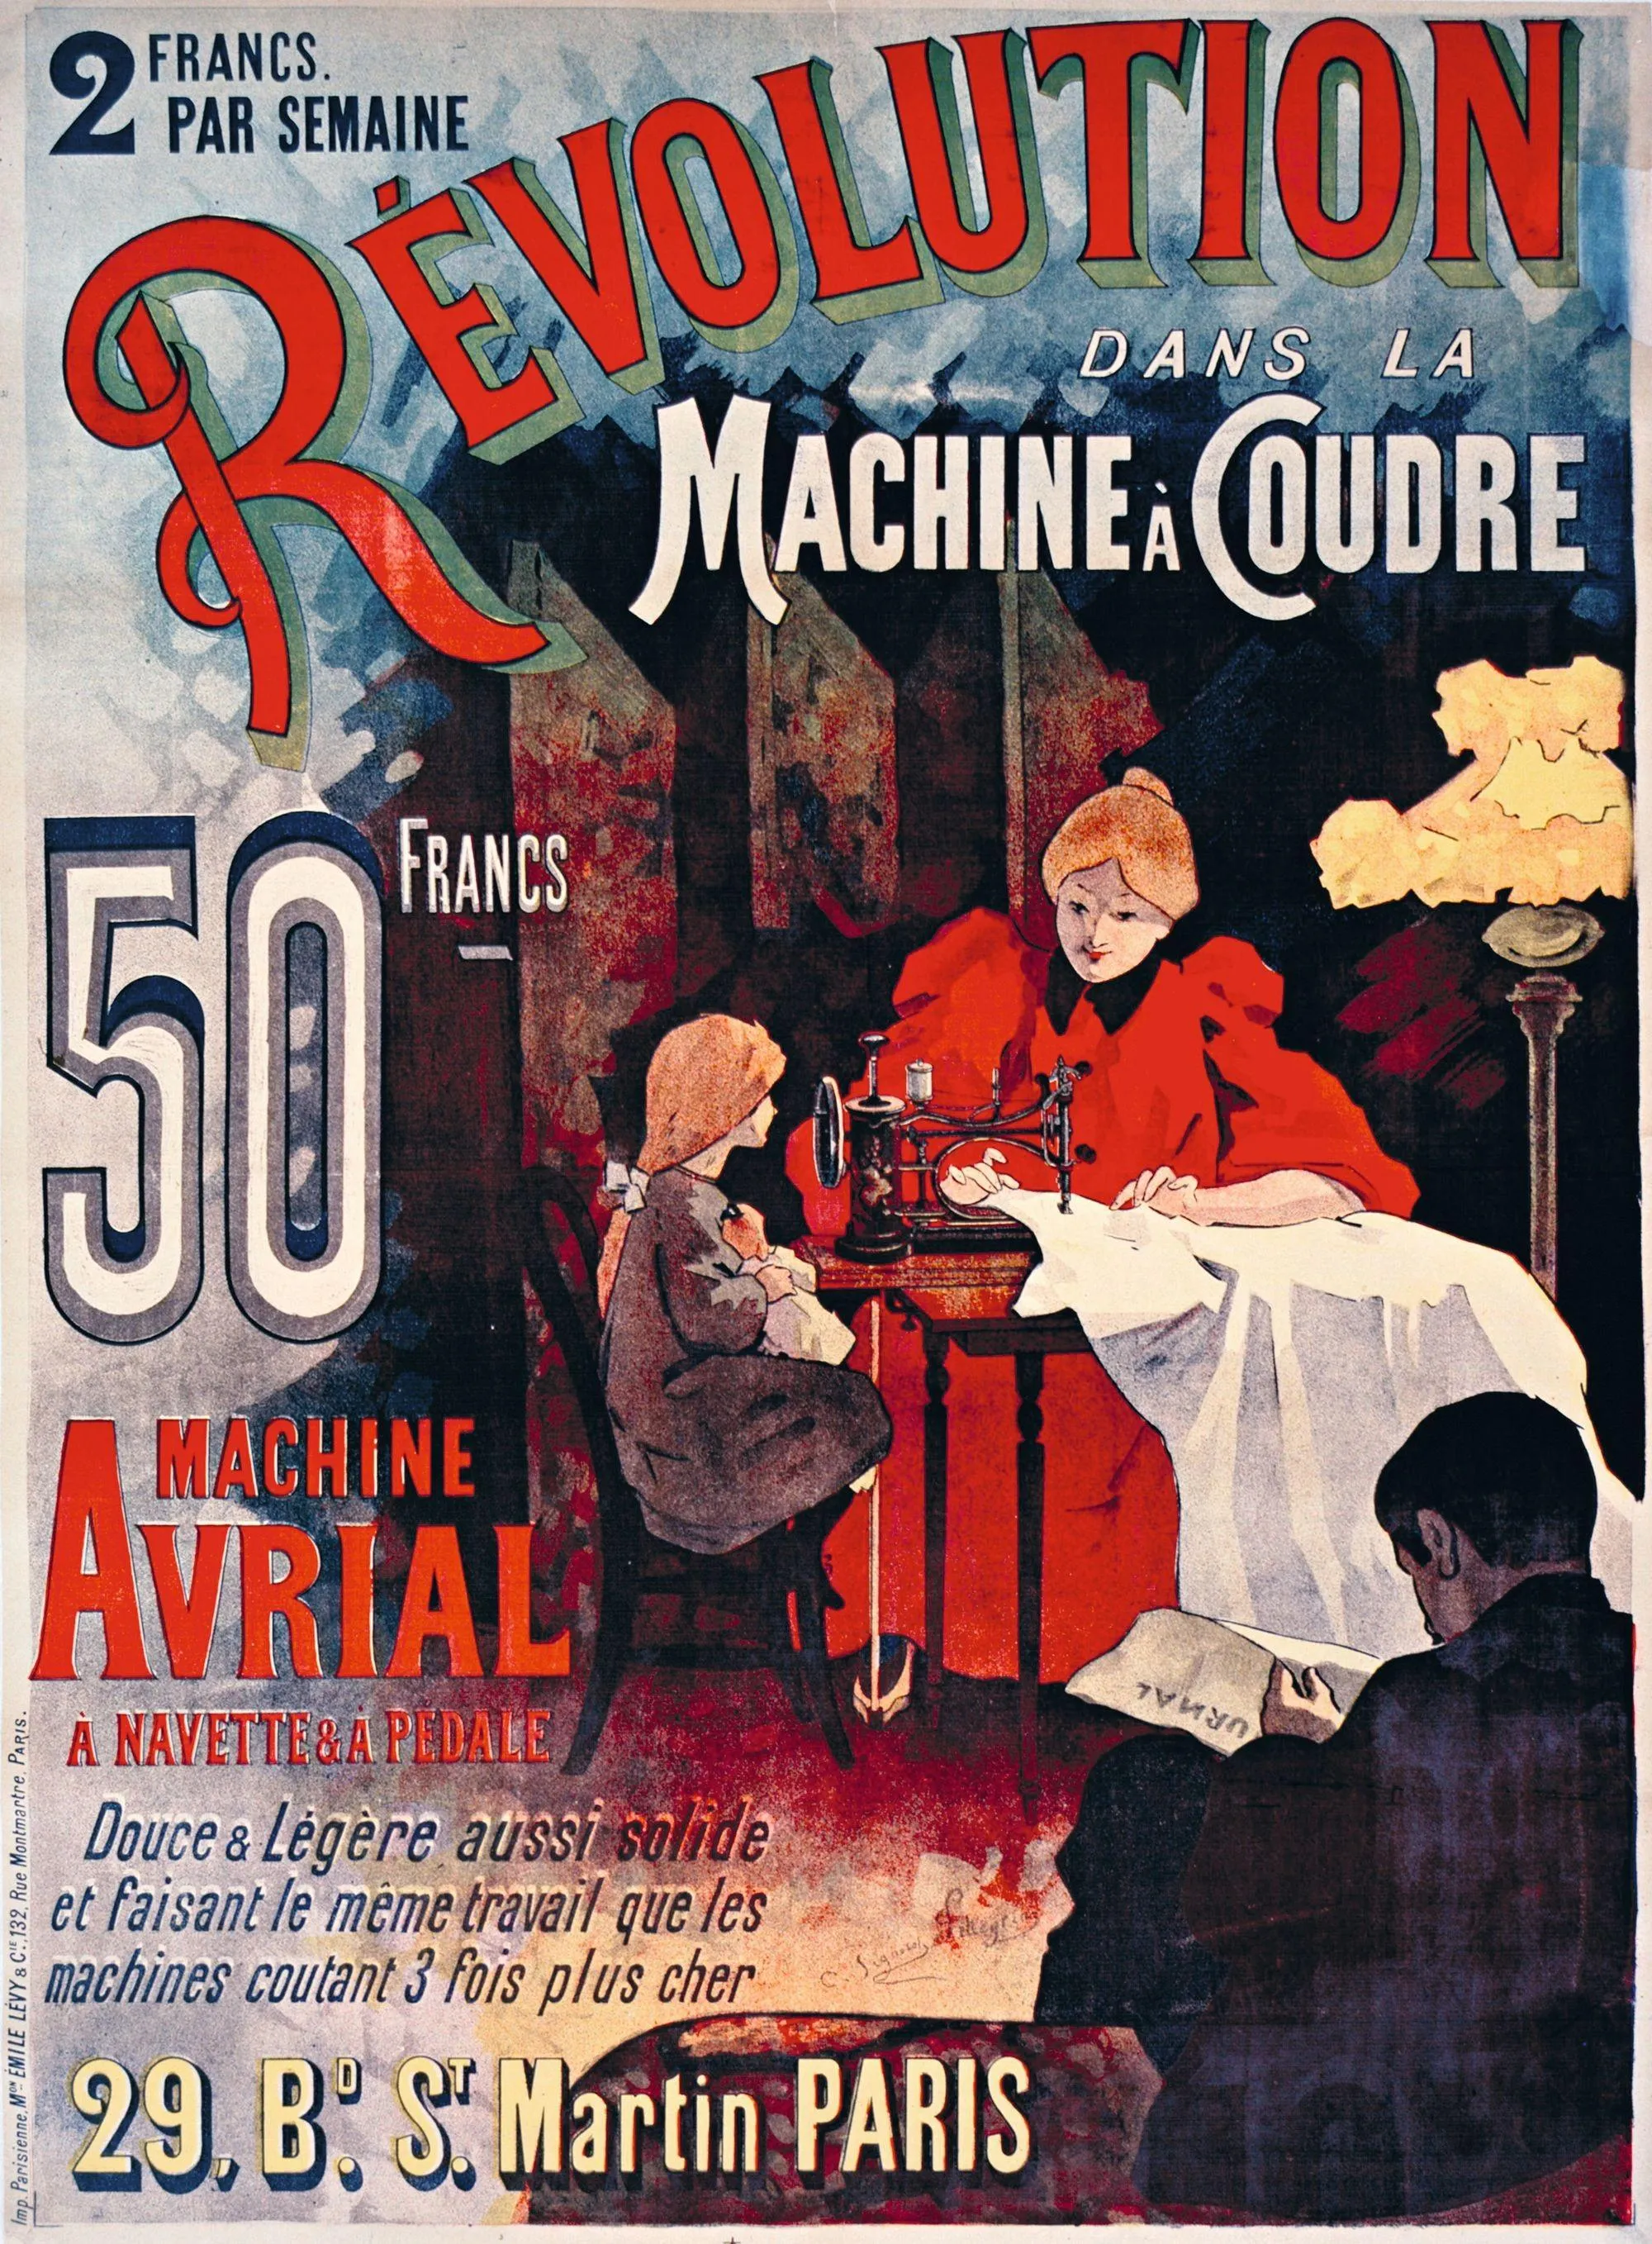 Machine à coudre Avrial, 1895, lithographie en
couleur, 130 x 93 cm, BnF, Paris.